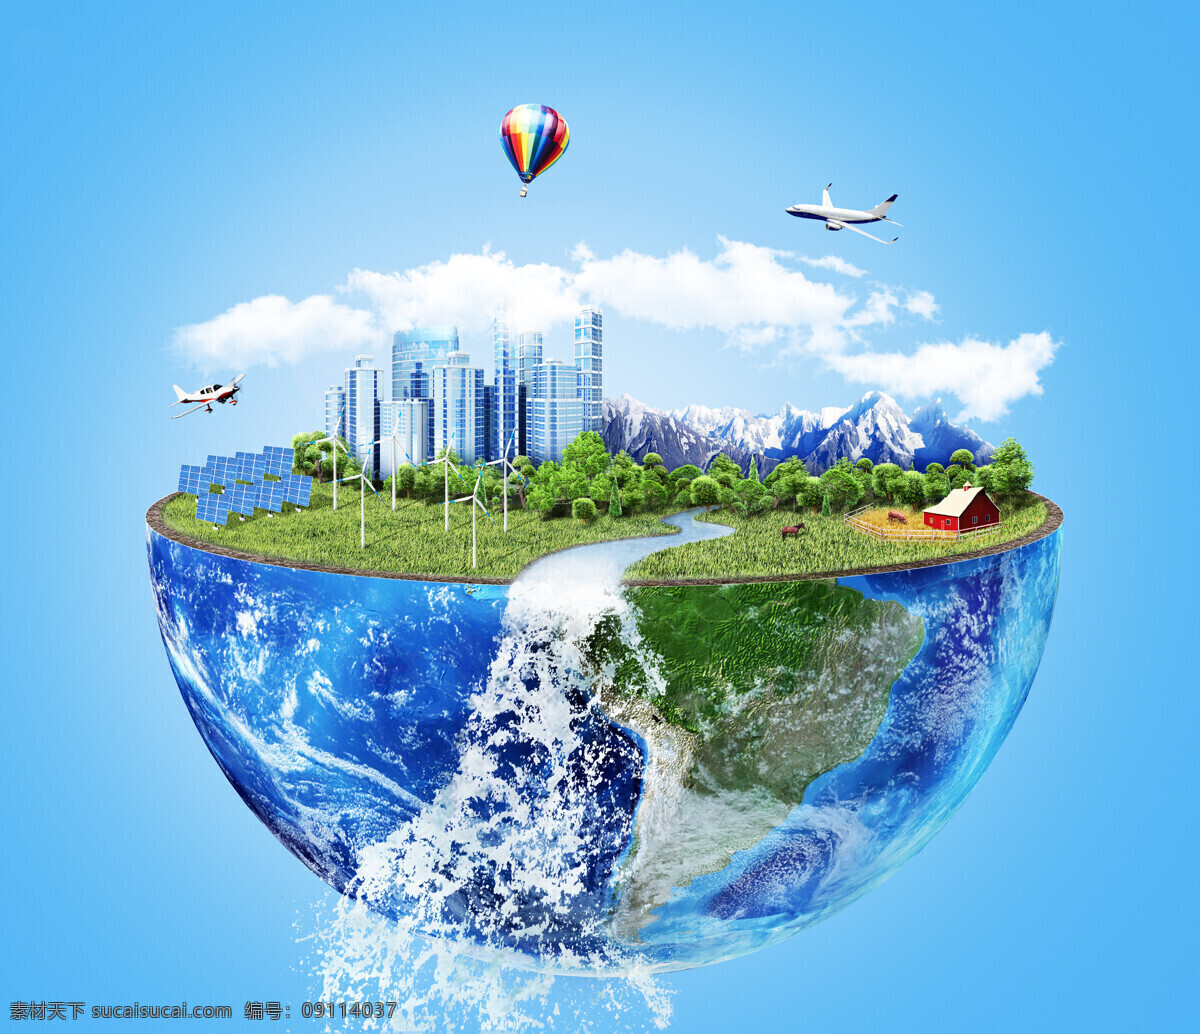 爱护地球 保护环境 爱护环境 爱护家园 创意环保 文明城市 城市环保 城市 循环城市 可持续发展